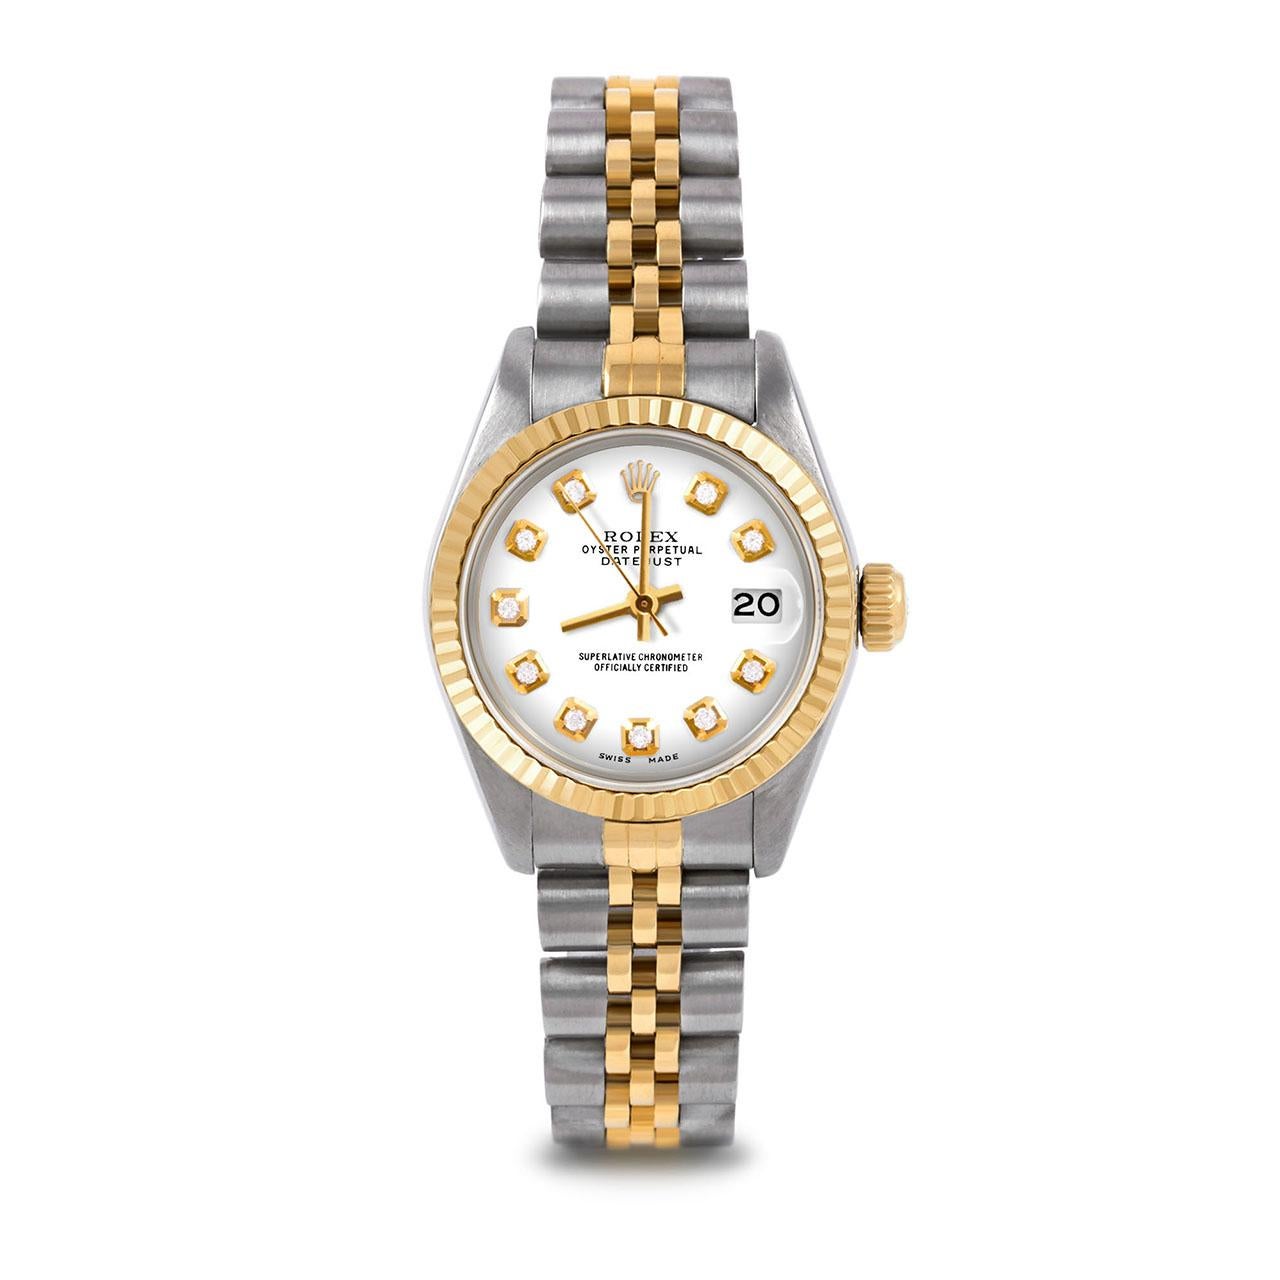 Montre Rolex 6917 26mm Two Tone Datejust pour femme, cadran personnalisé en diamants blancs et lunette cannelée sur bracelet jubilé en or jaune 14K et acier inoxydable.   

SKU 6917-TT-WHT-DIA-AM-FLT-JBL


Marque/Modèle :        Rolex